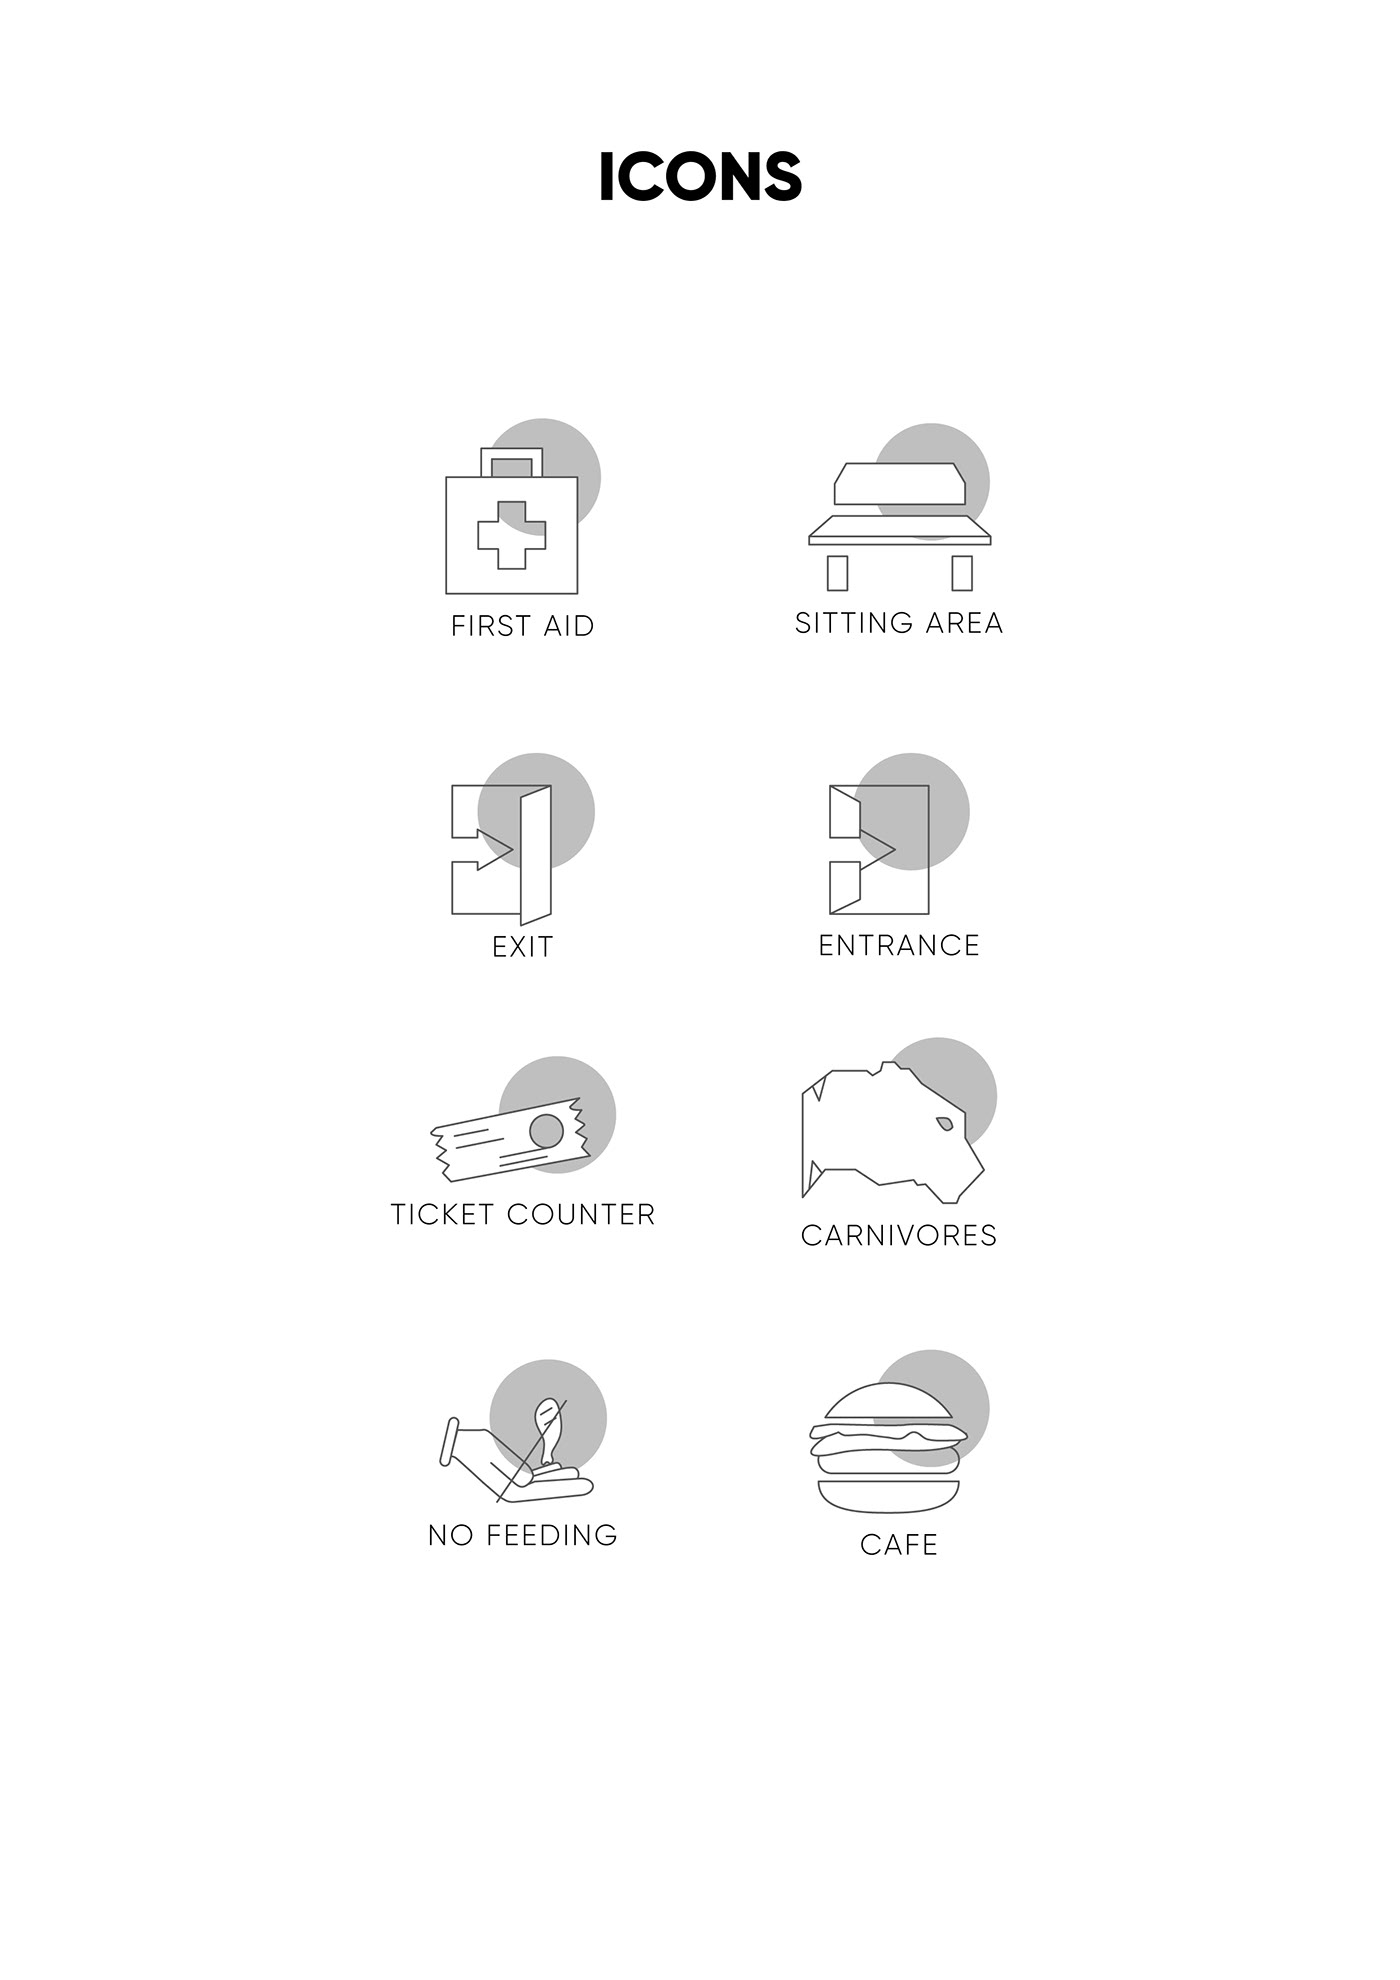 Flaticons iconography icons Iconsdesign identity minimalicons